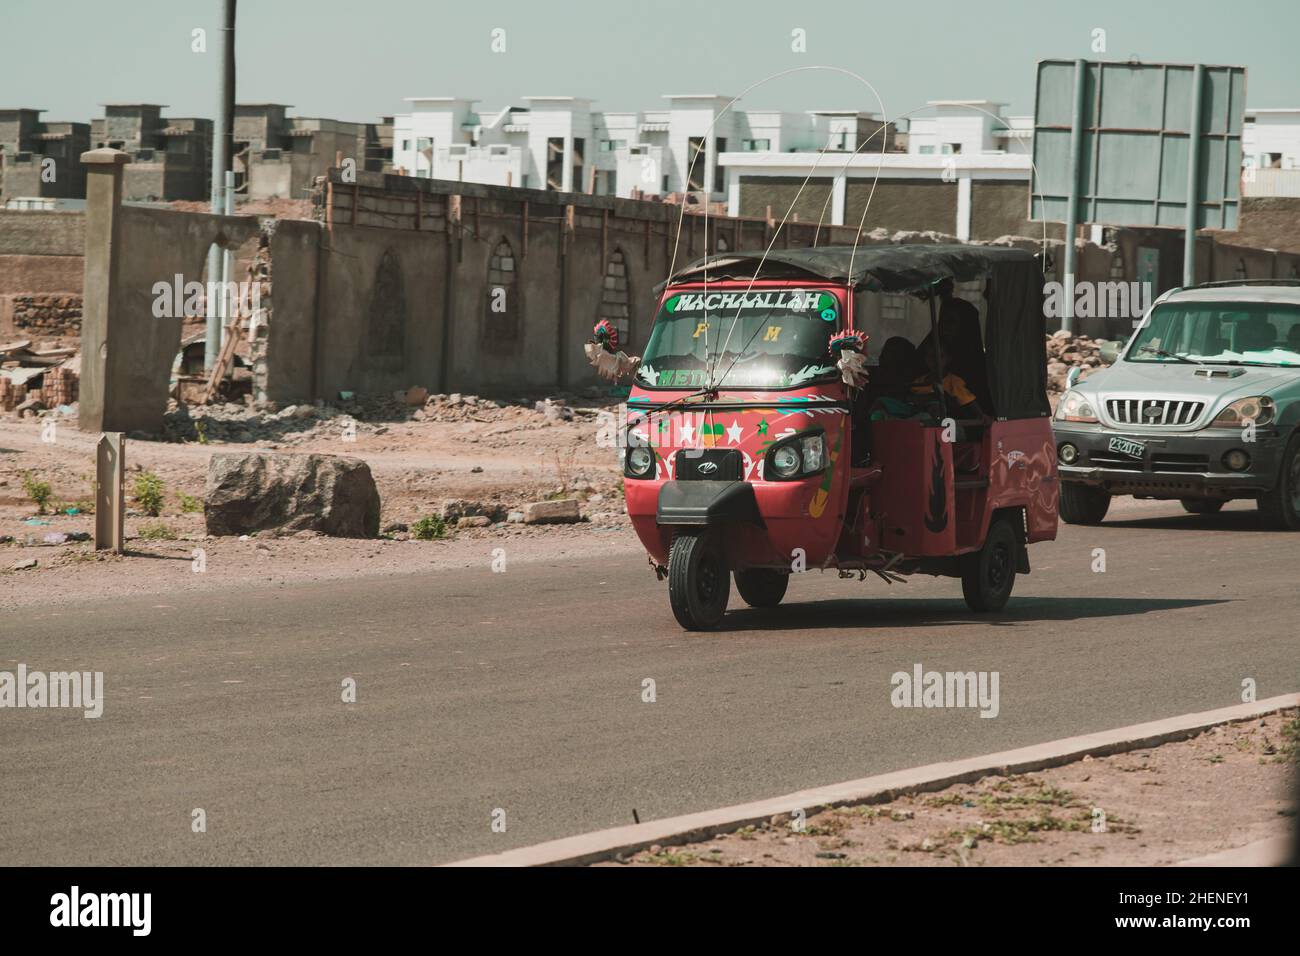 Djibouti, Djibouti - May 21, 2021: Auto rickshaw local taxi on the road in Djibouti. Editorial shot in Djibouti. Stock Photo